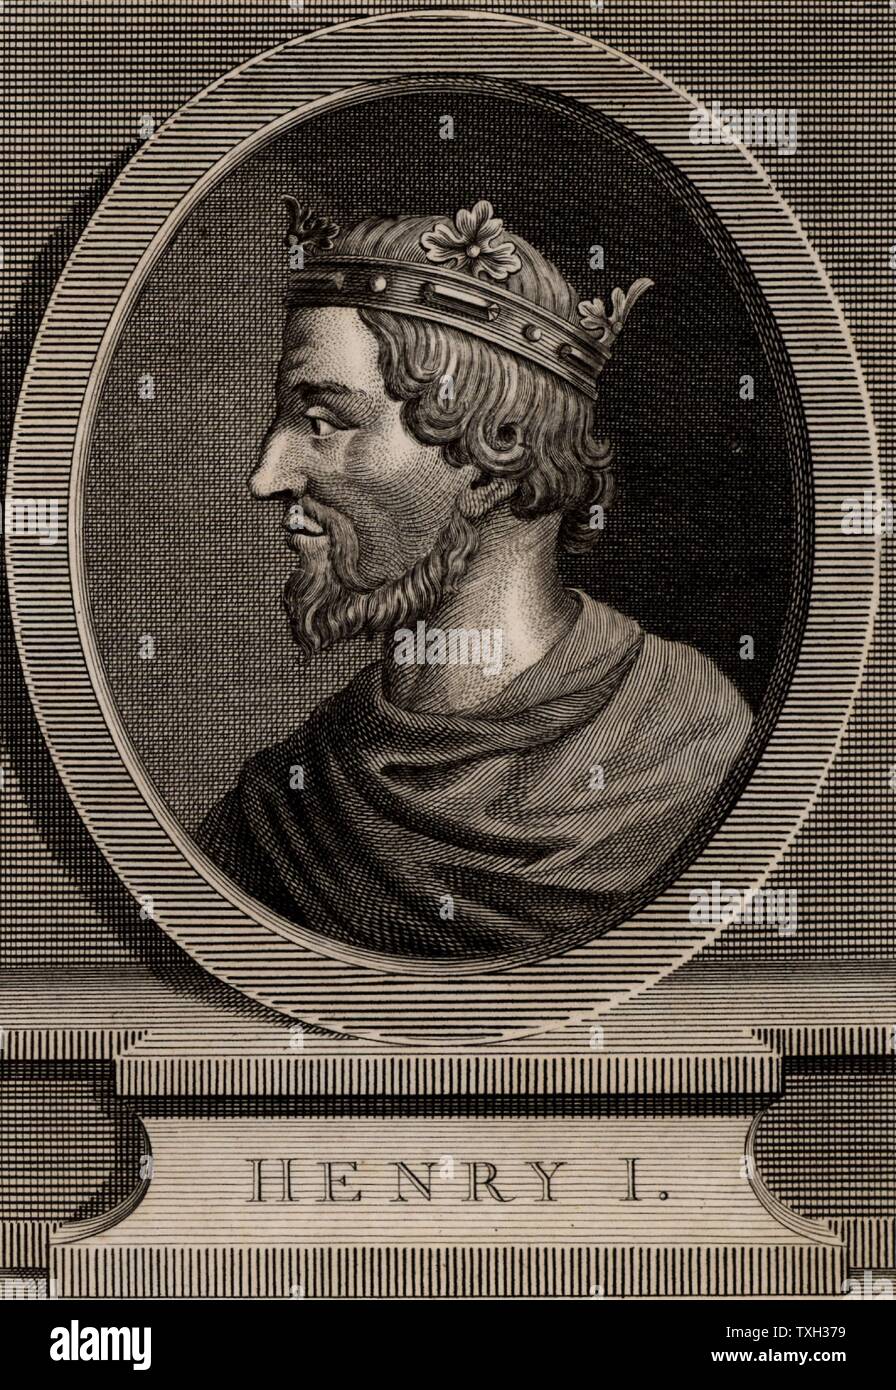 Enrique I (C1005-1060), rey de Francia desde 1031. Hijo de Roberto II y nieto de Hugh Capet, el fundador de la dinastía de los Capetos. Copperplate grabado 1793. Foto de stock